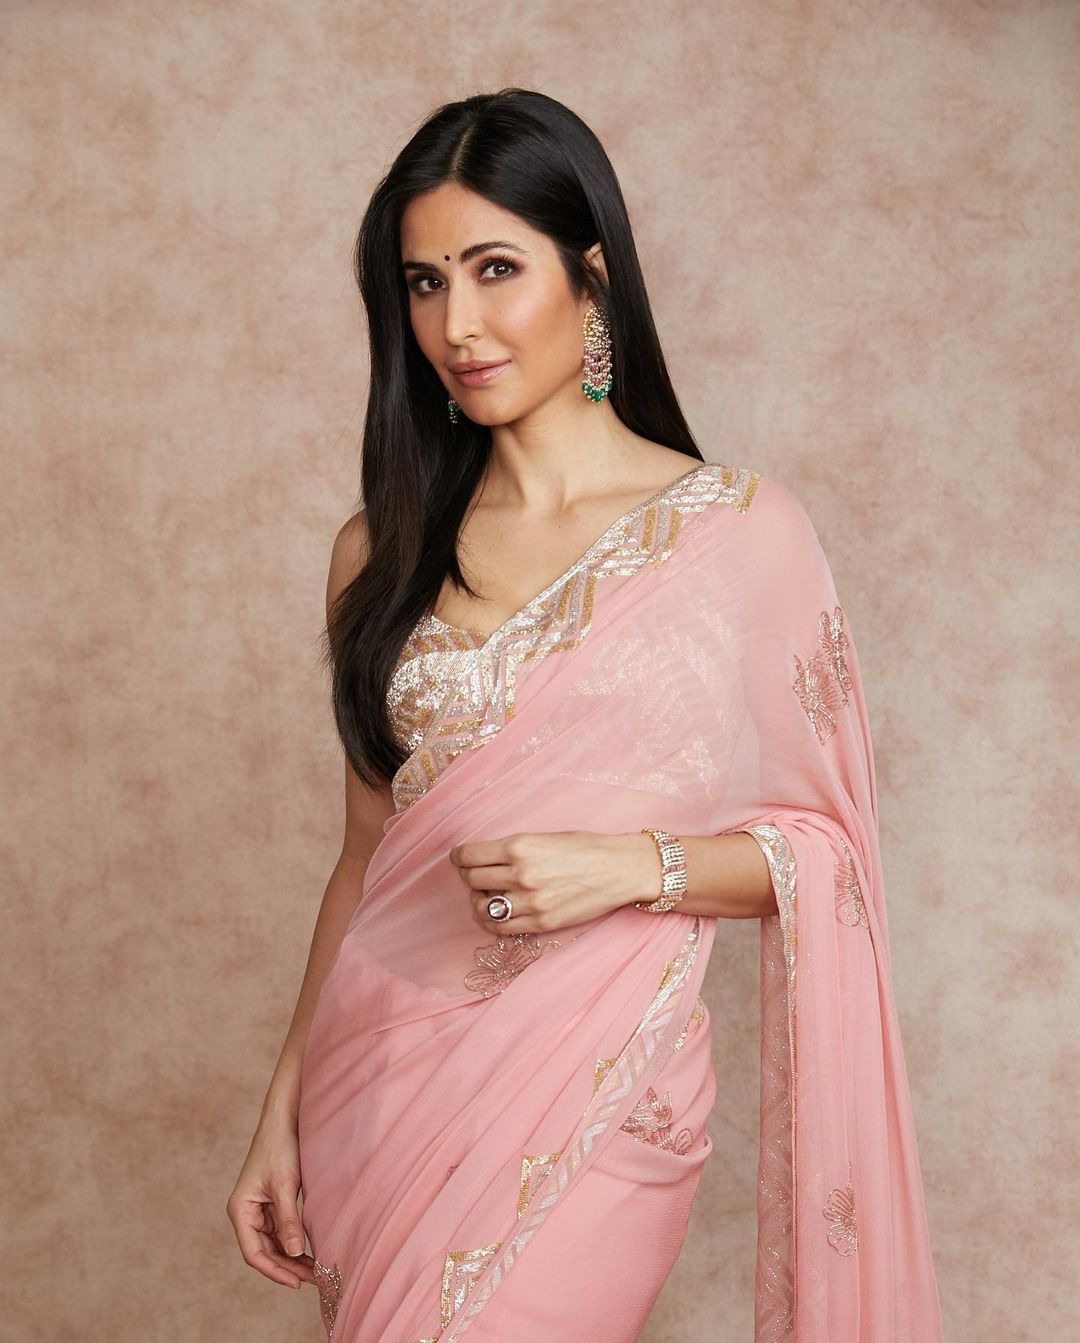 Katrina Kaif gunakan sari rancangan Manish Malhotra.